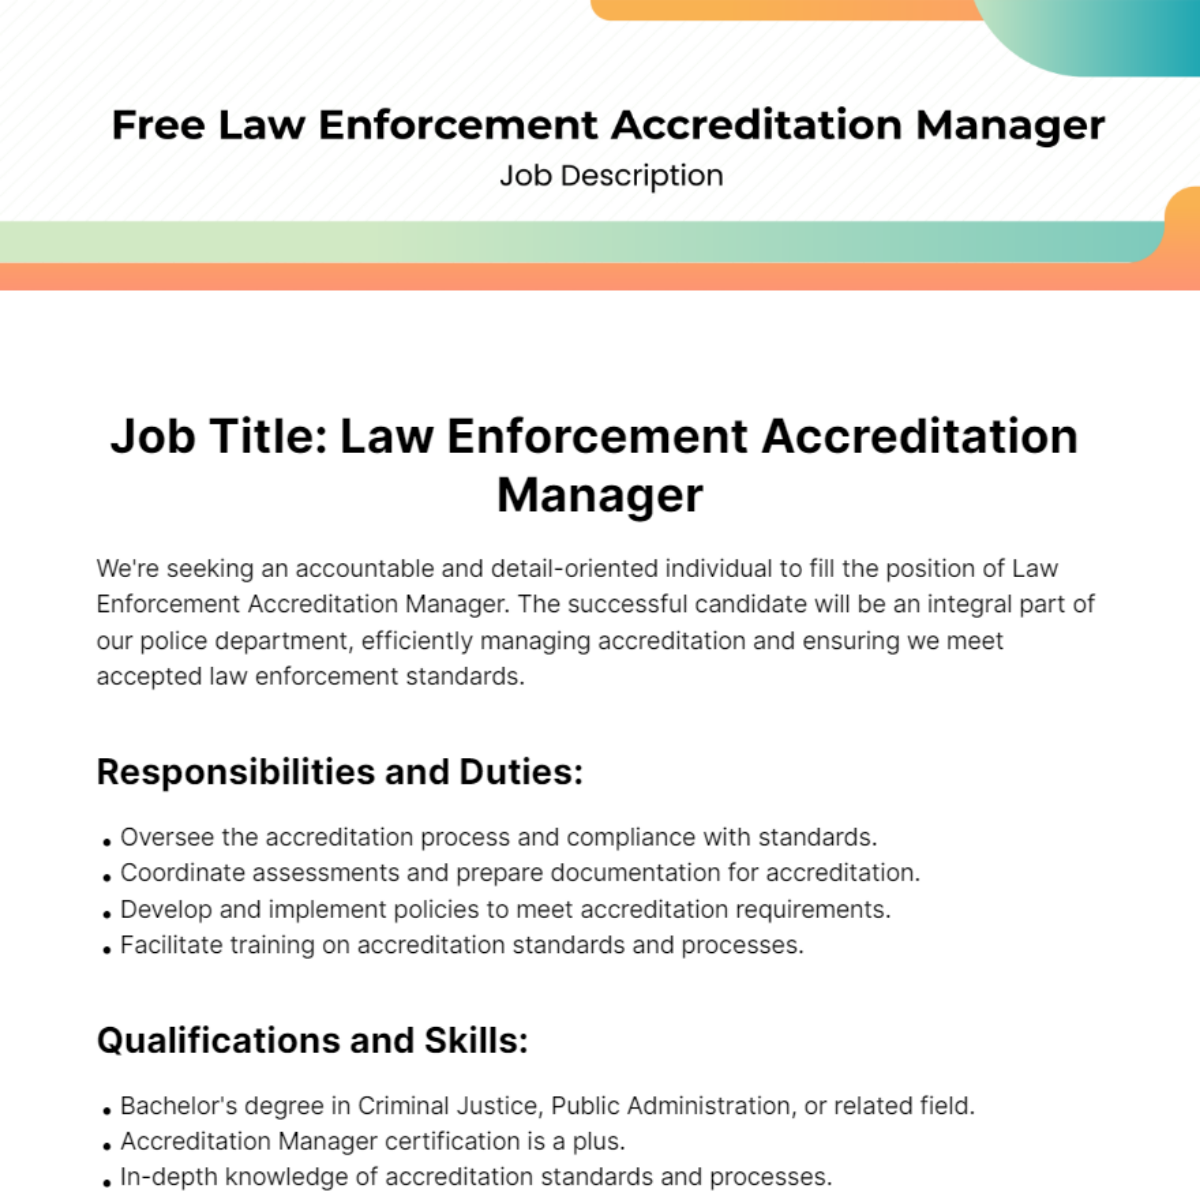 Law Enforcement Accreditation Manager Job Description Template